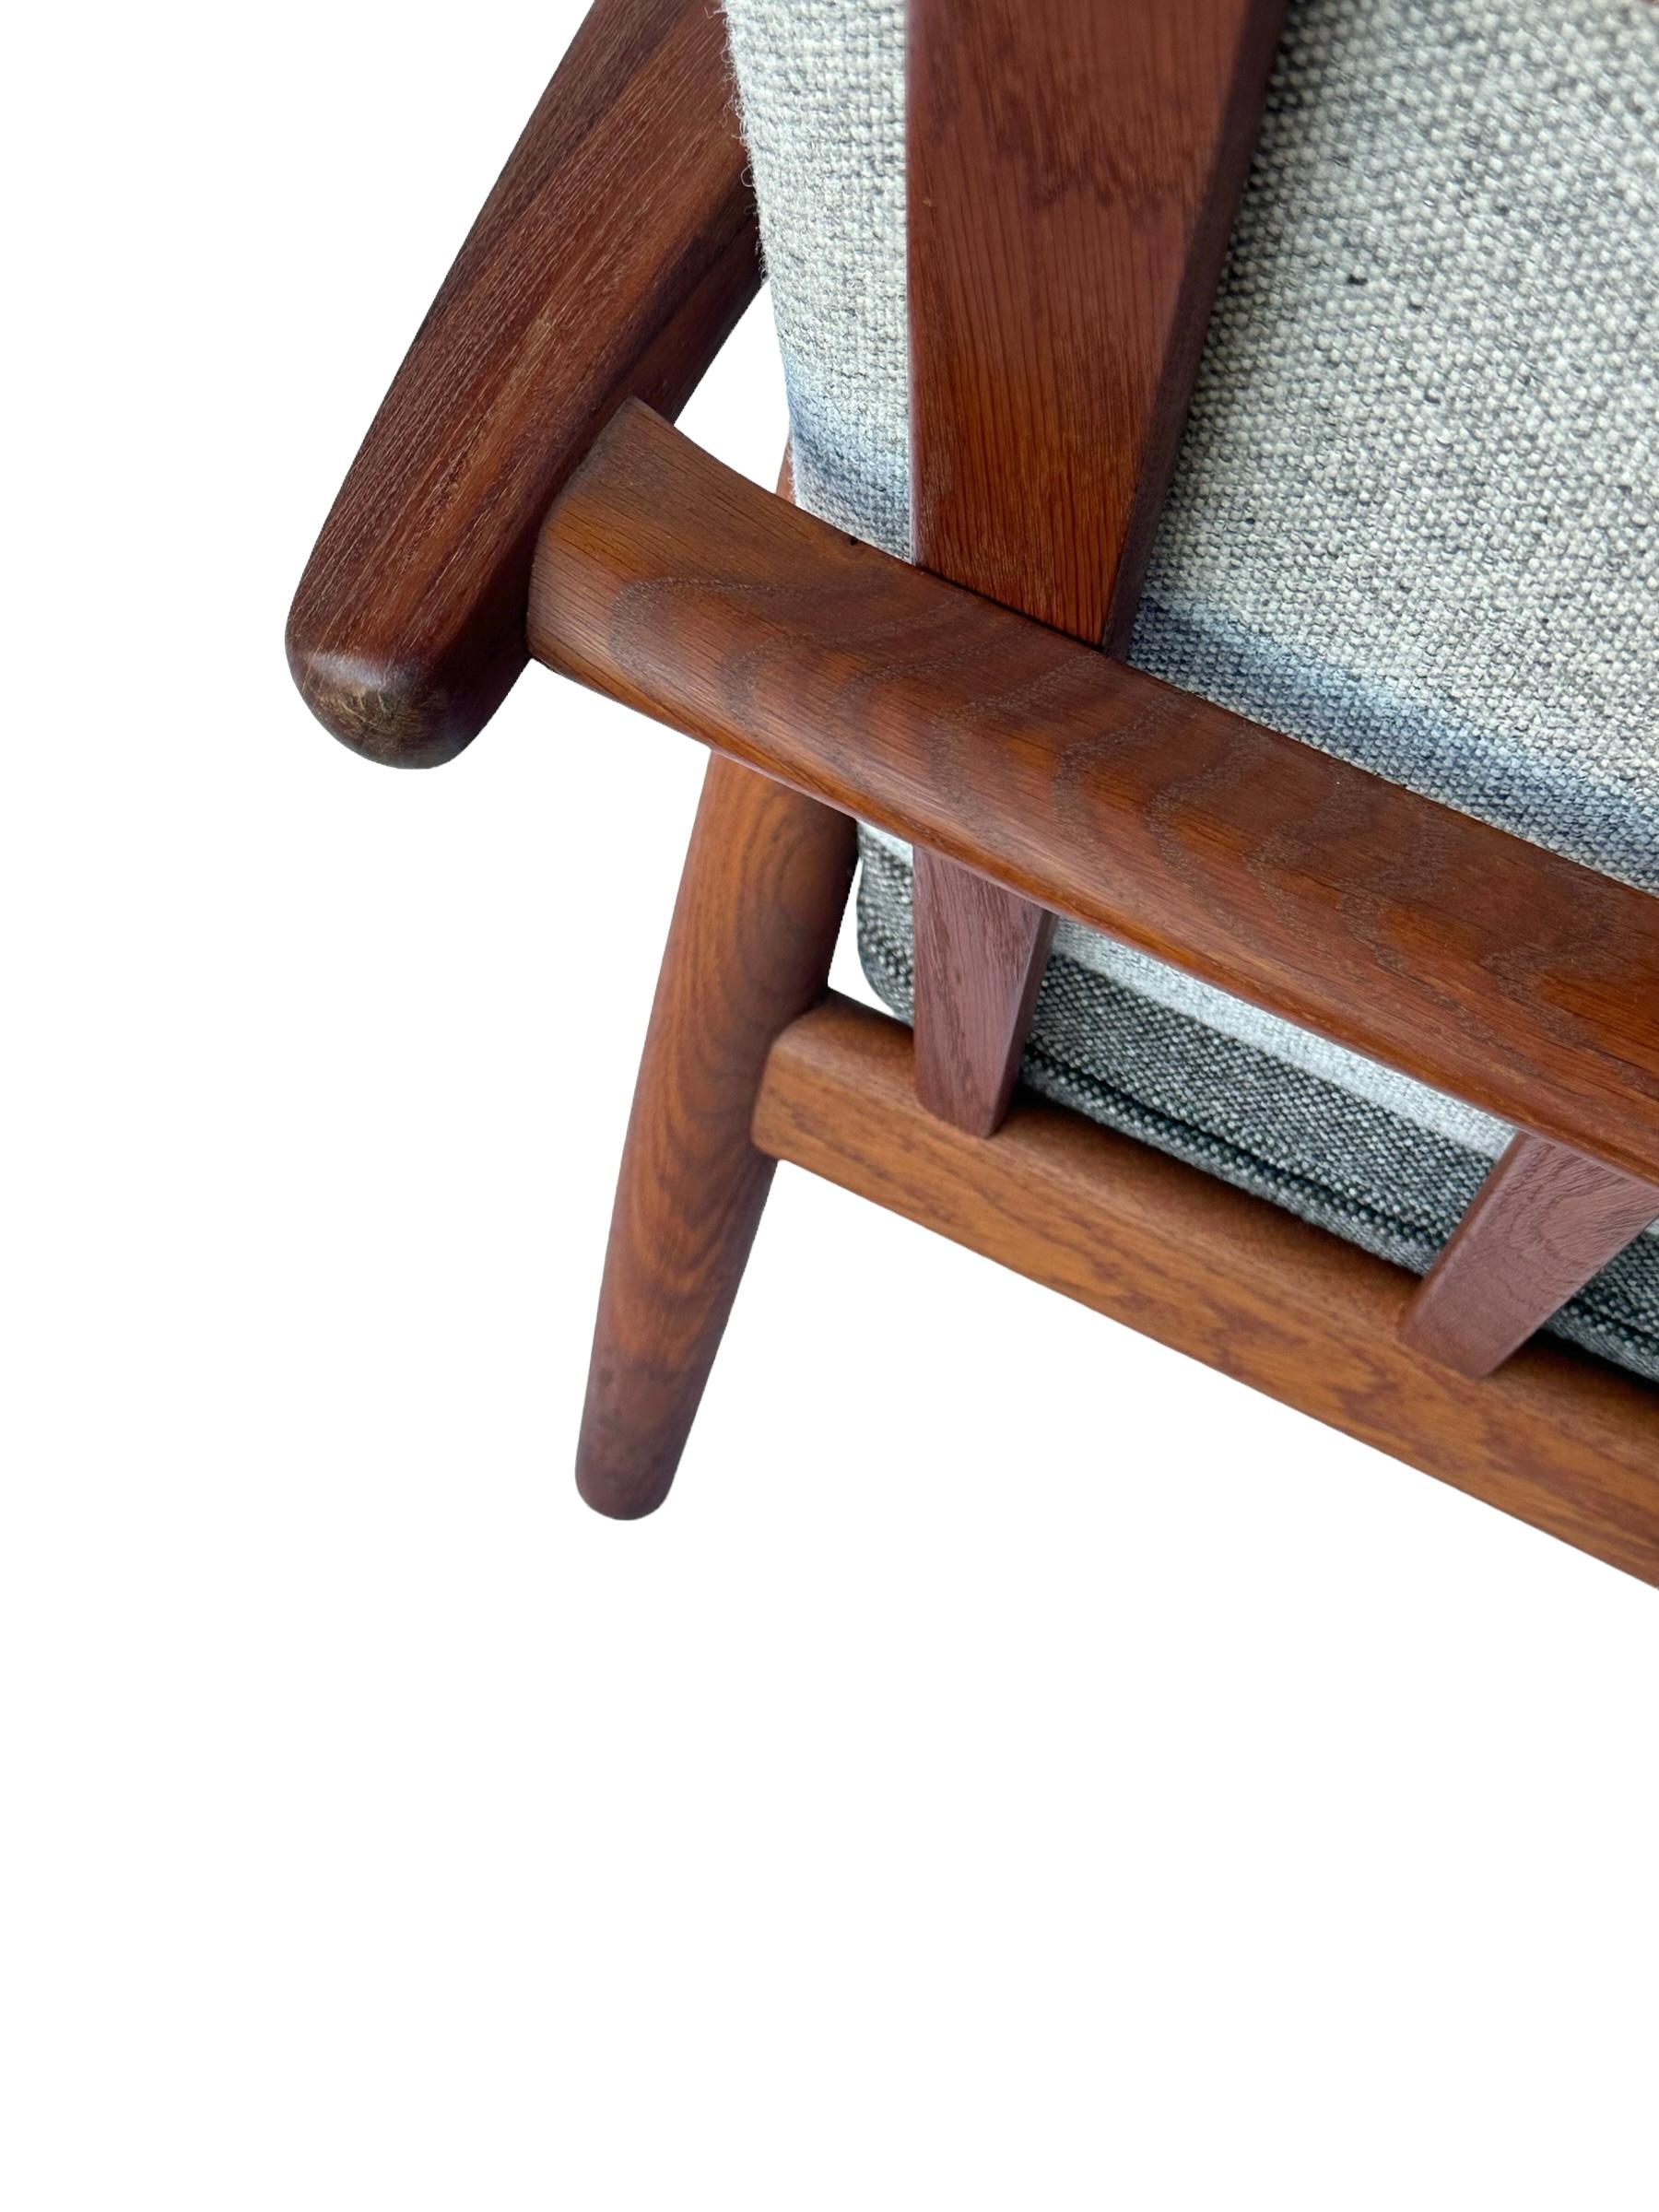 Hans J. Wegner Cigar Lounge Chair in Teak with New Maharam Upholstery For Sale 6